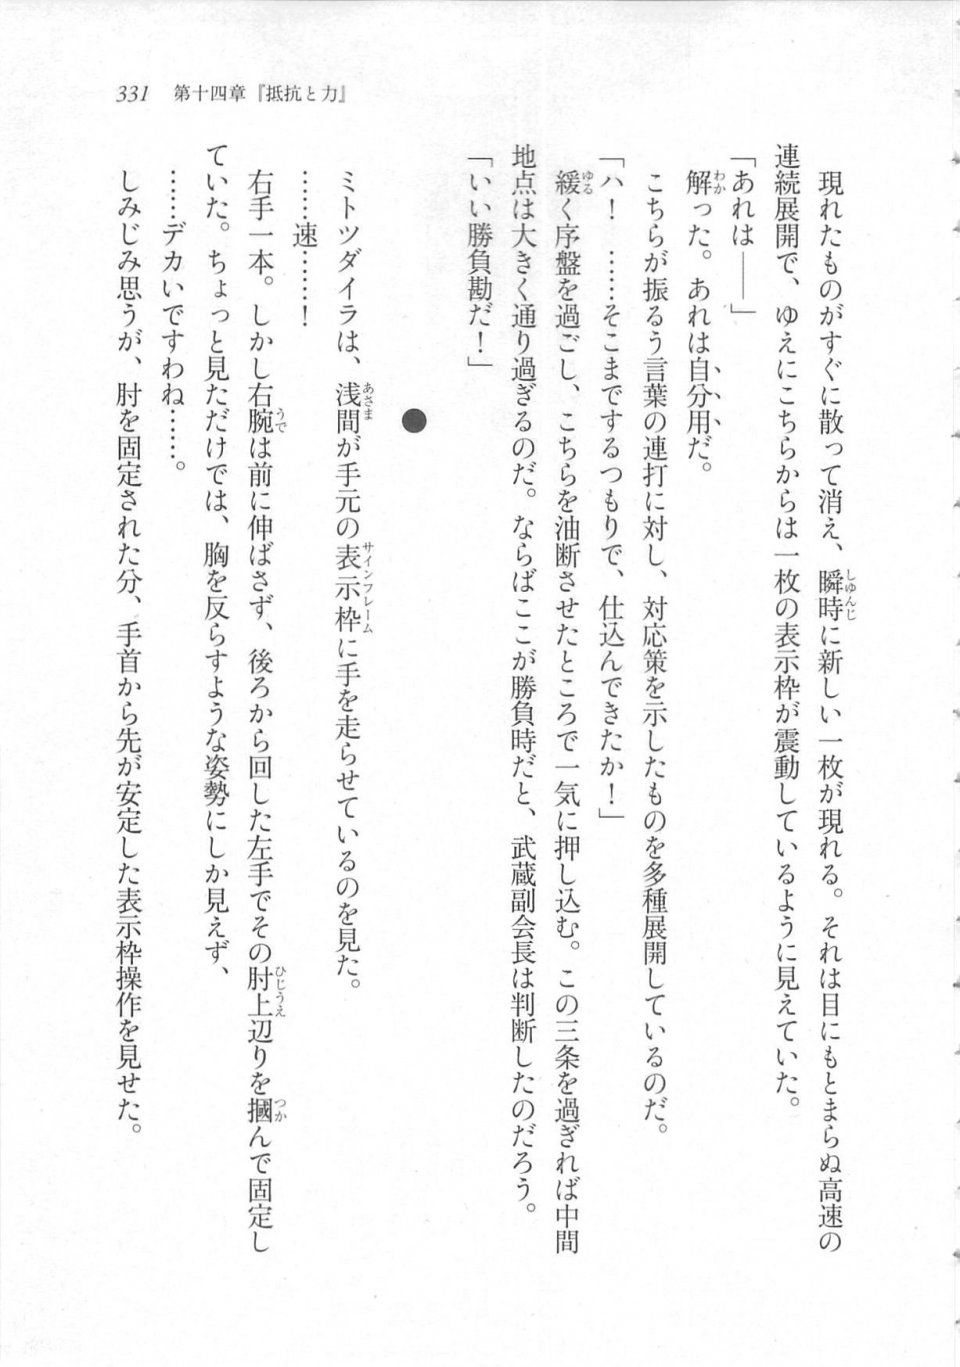 Kyoukai Senjou no Horizon LN Sidestory Vol 3 - Photo #335